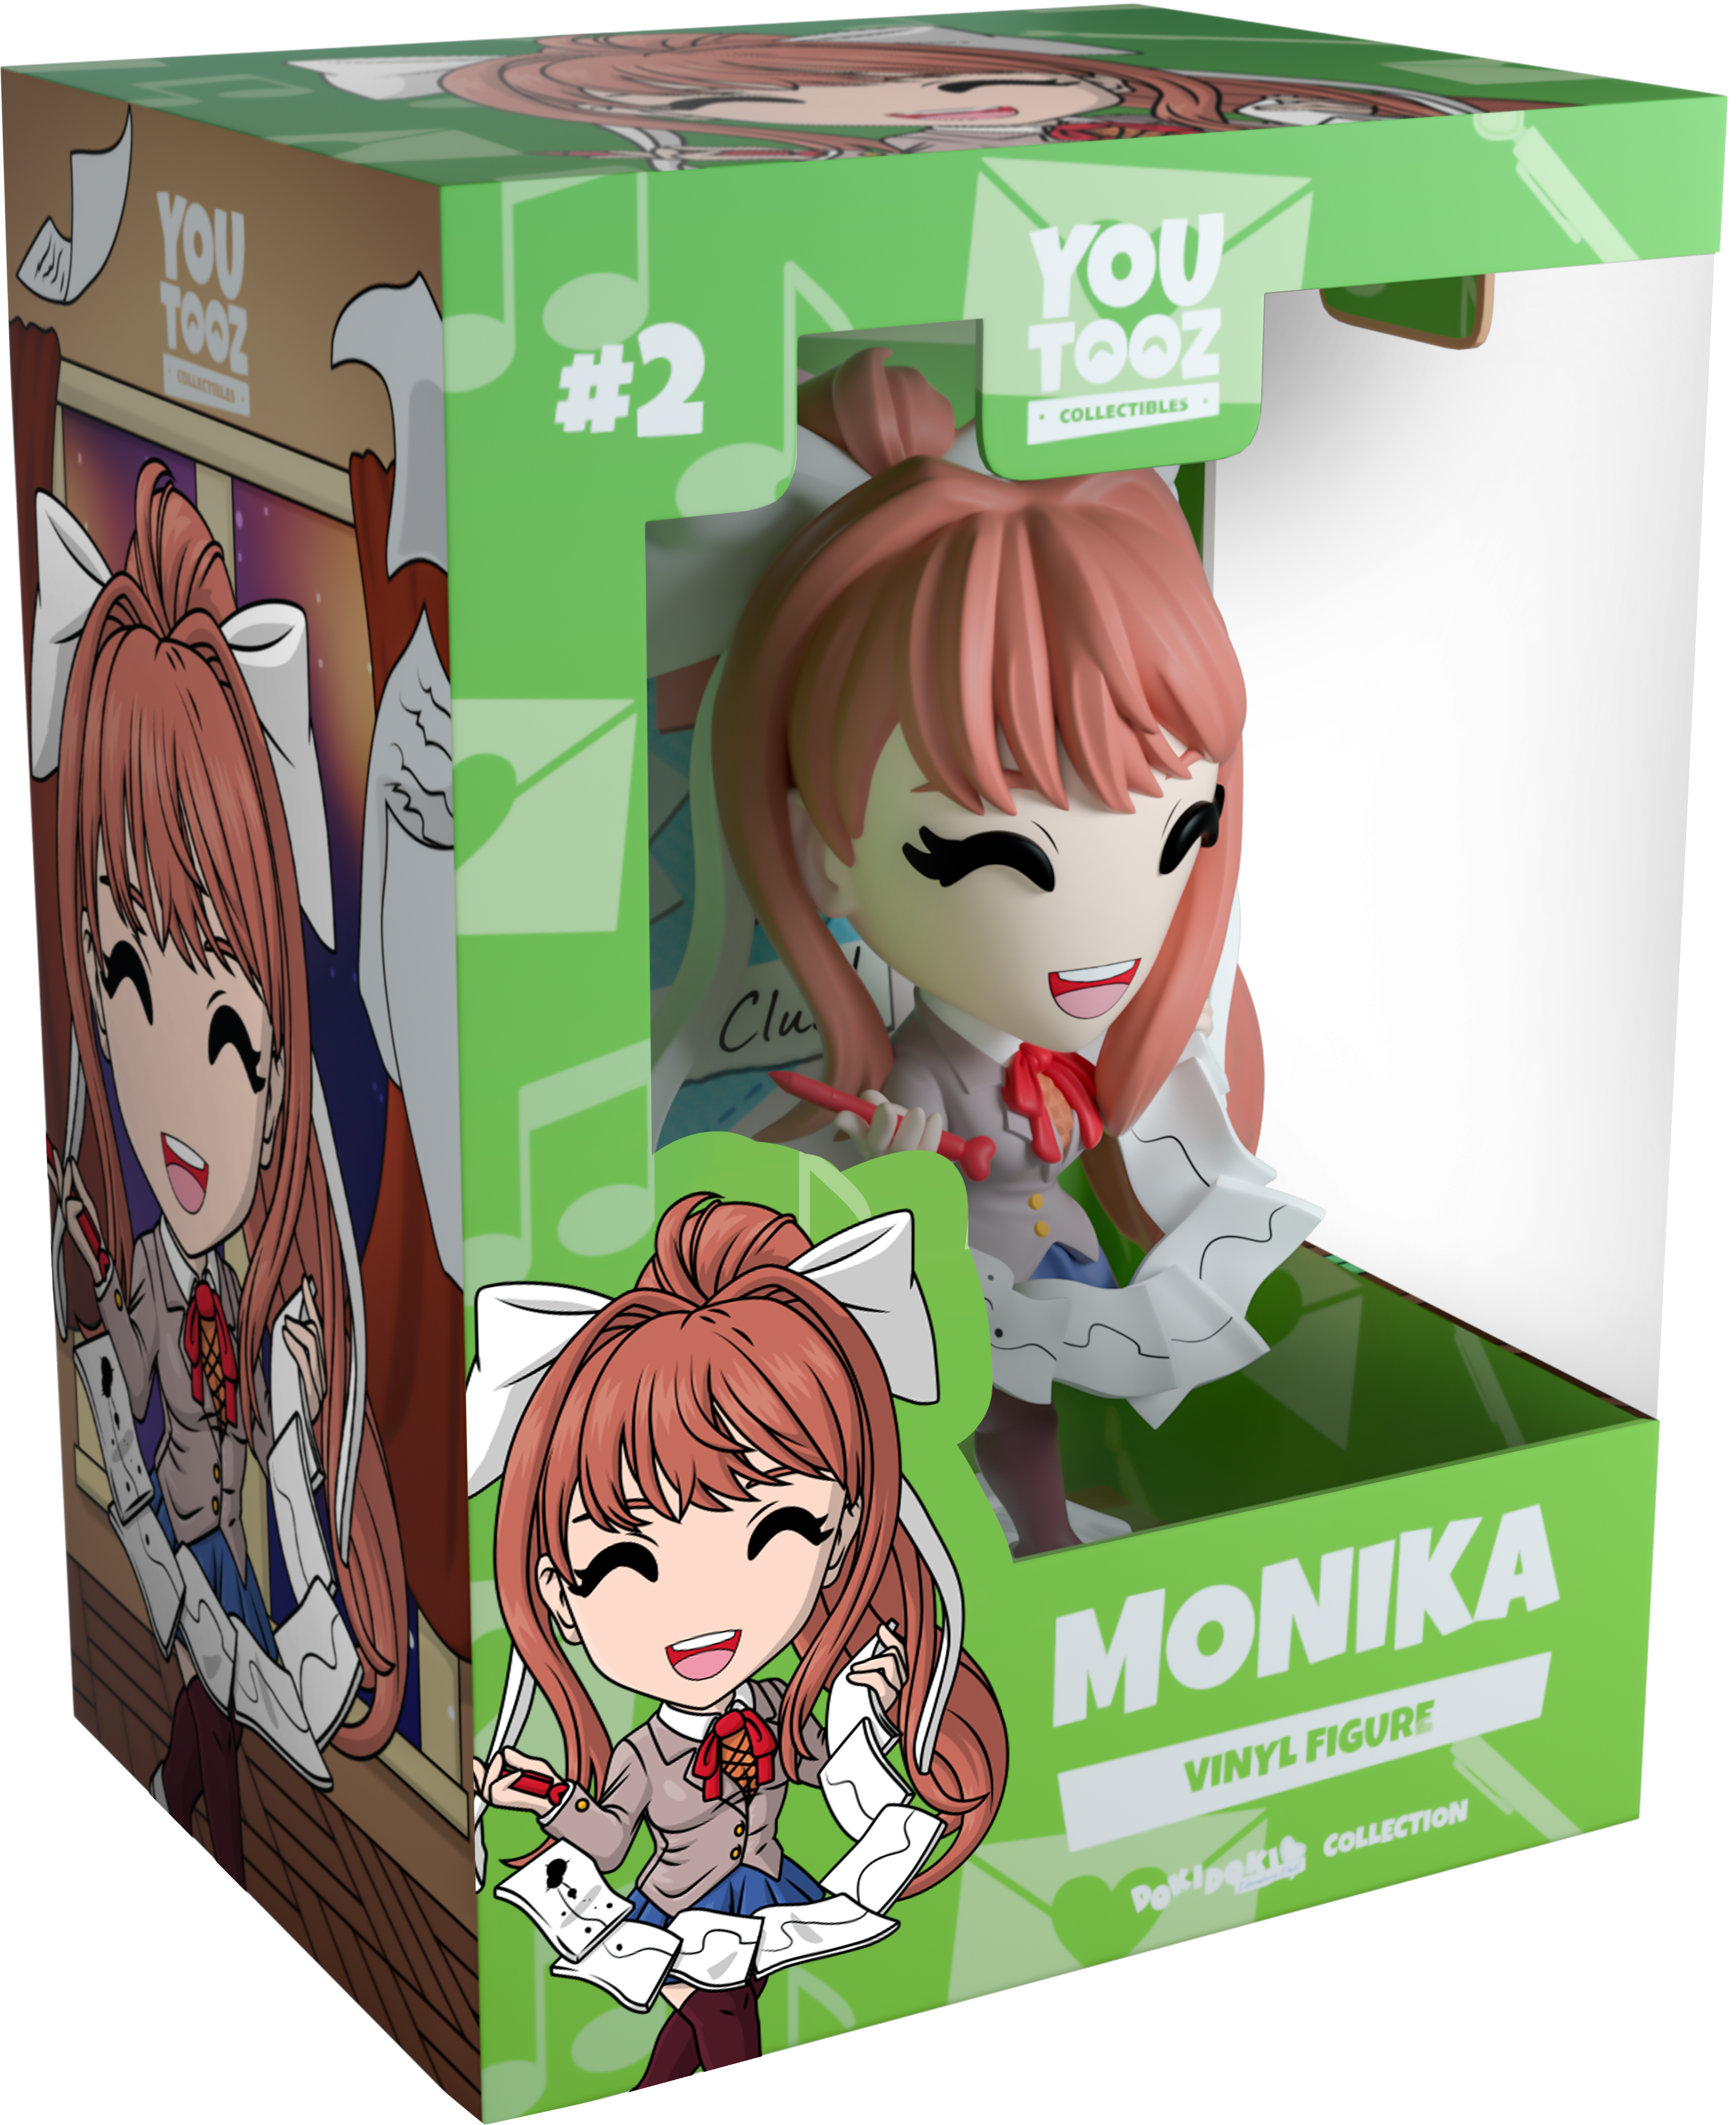 Ucc Distributing Doki Doki Literature Club Exclusive 6 Inch Monkia